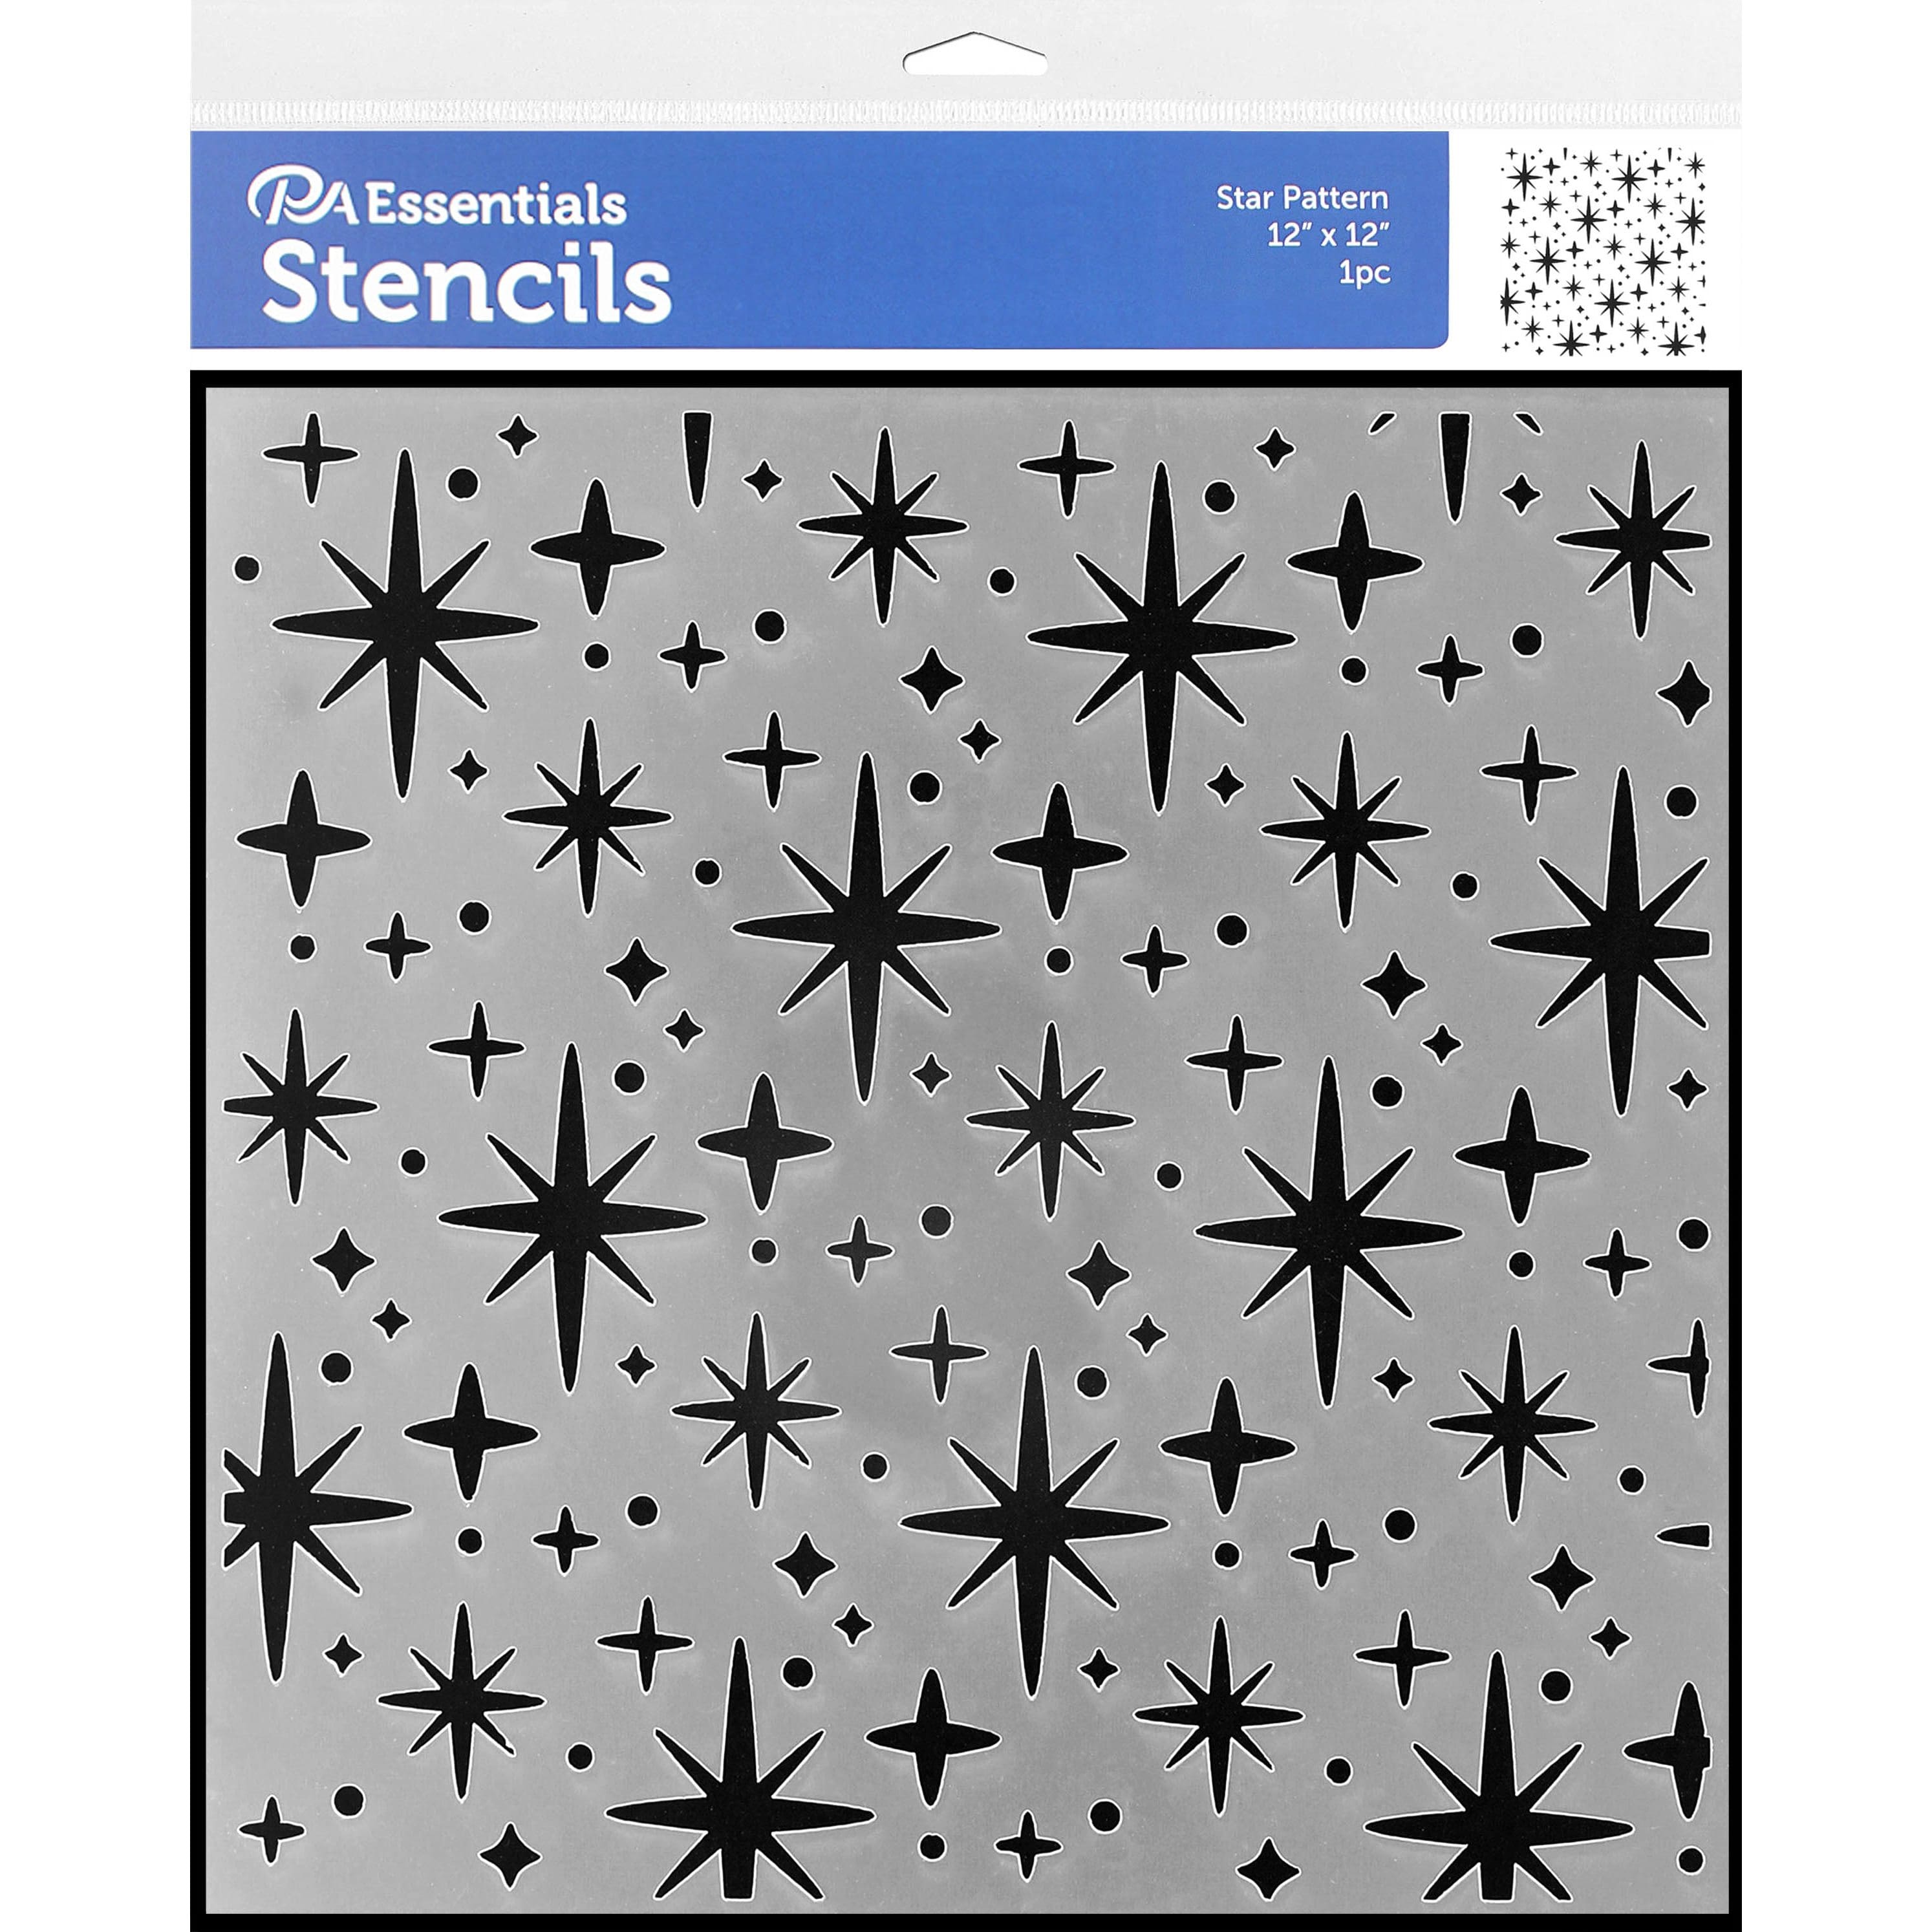 PA Essentials Star Pattern Stencil, 12'' x 12